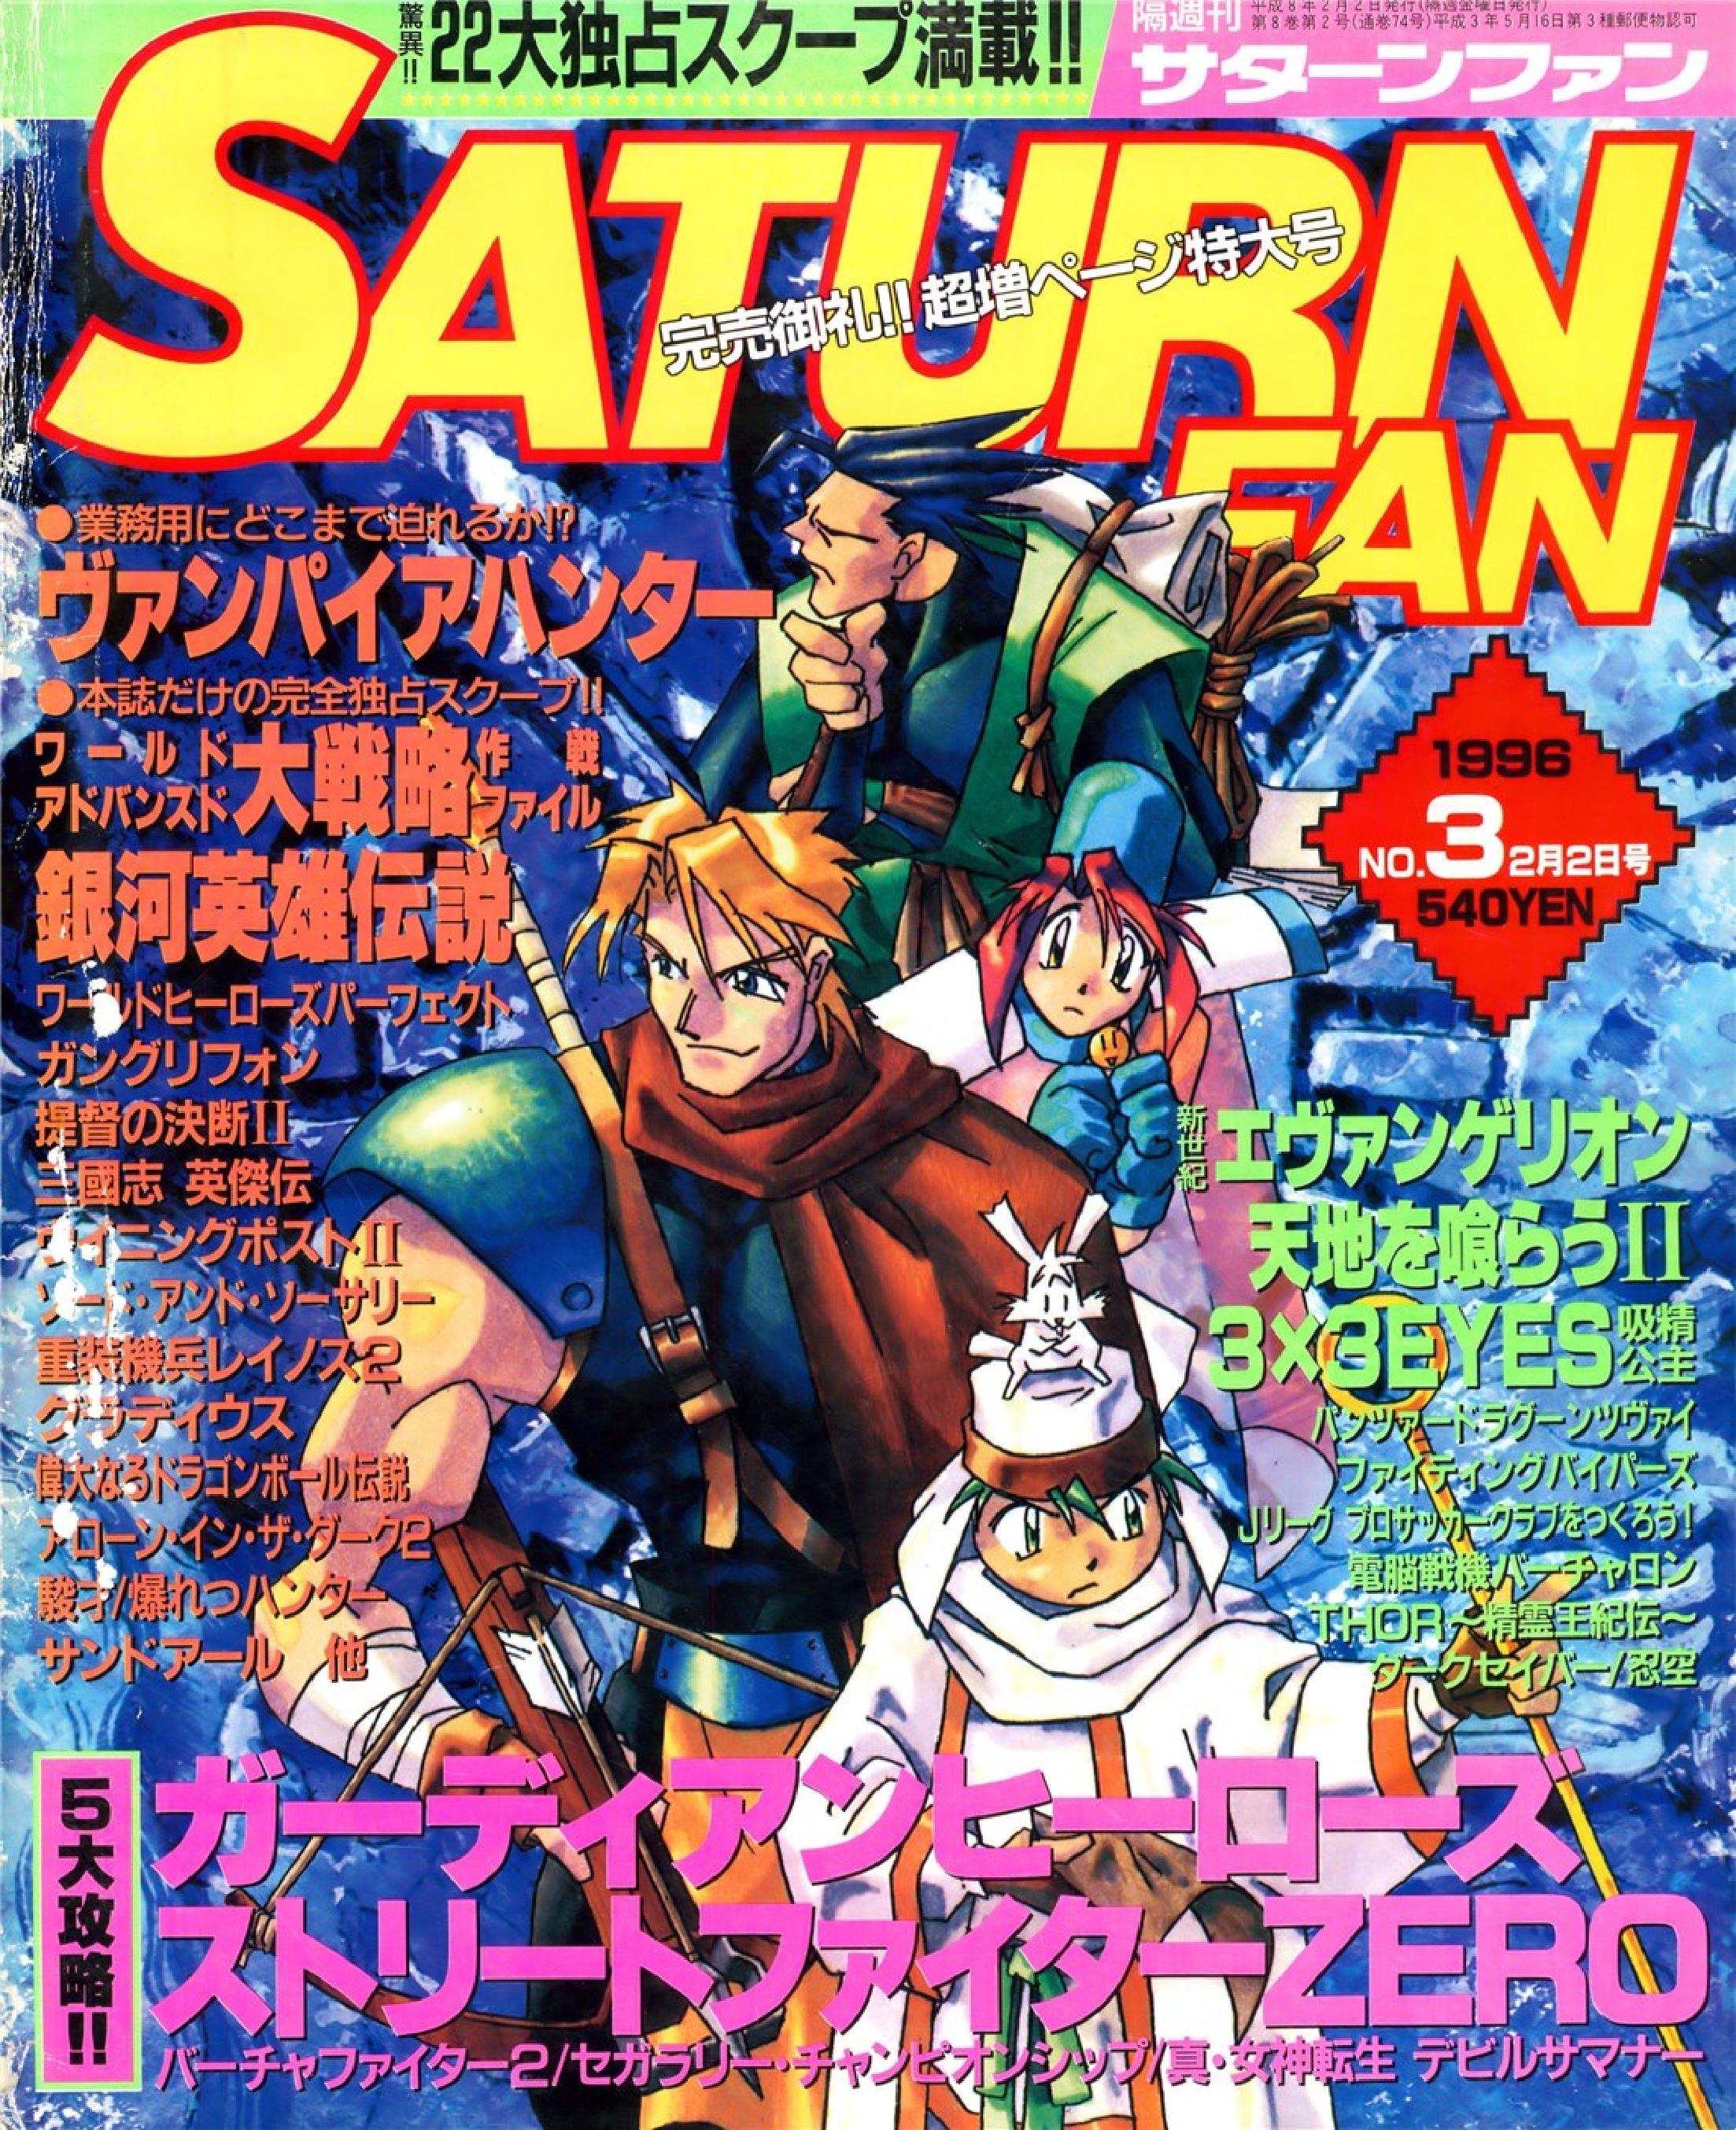 SaturnFan JP 1996-03 19960202.pdf